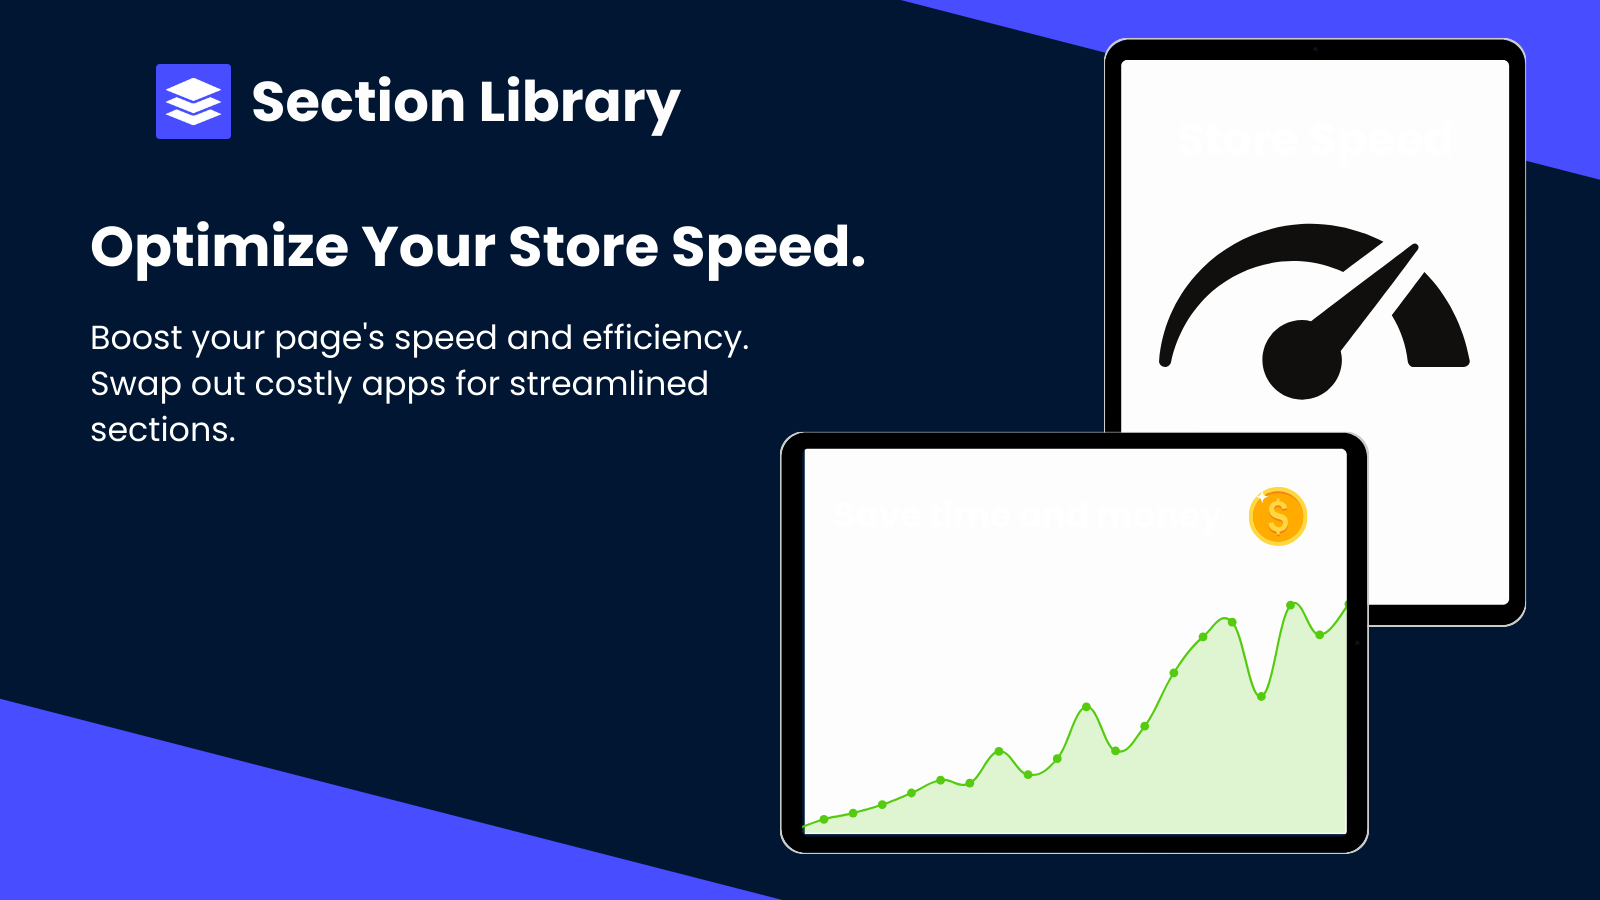 Uma explicação de como o aplicativo pode beneficiar a velocidade da loja